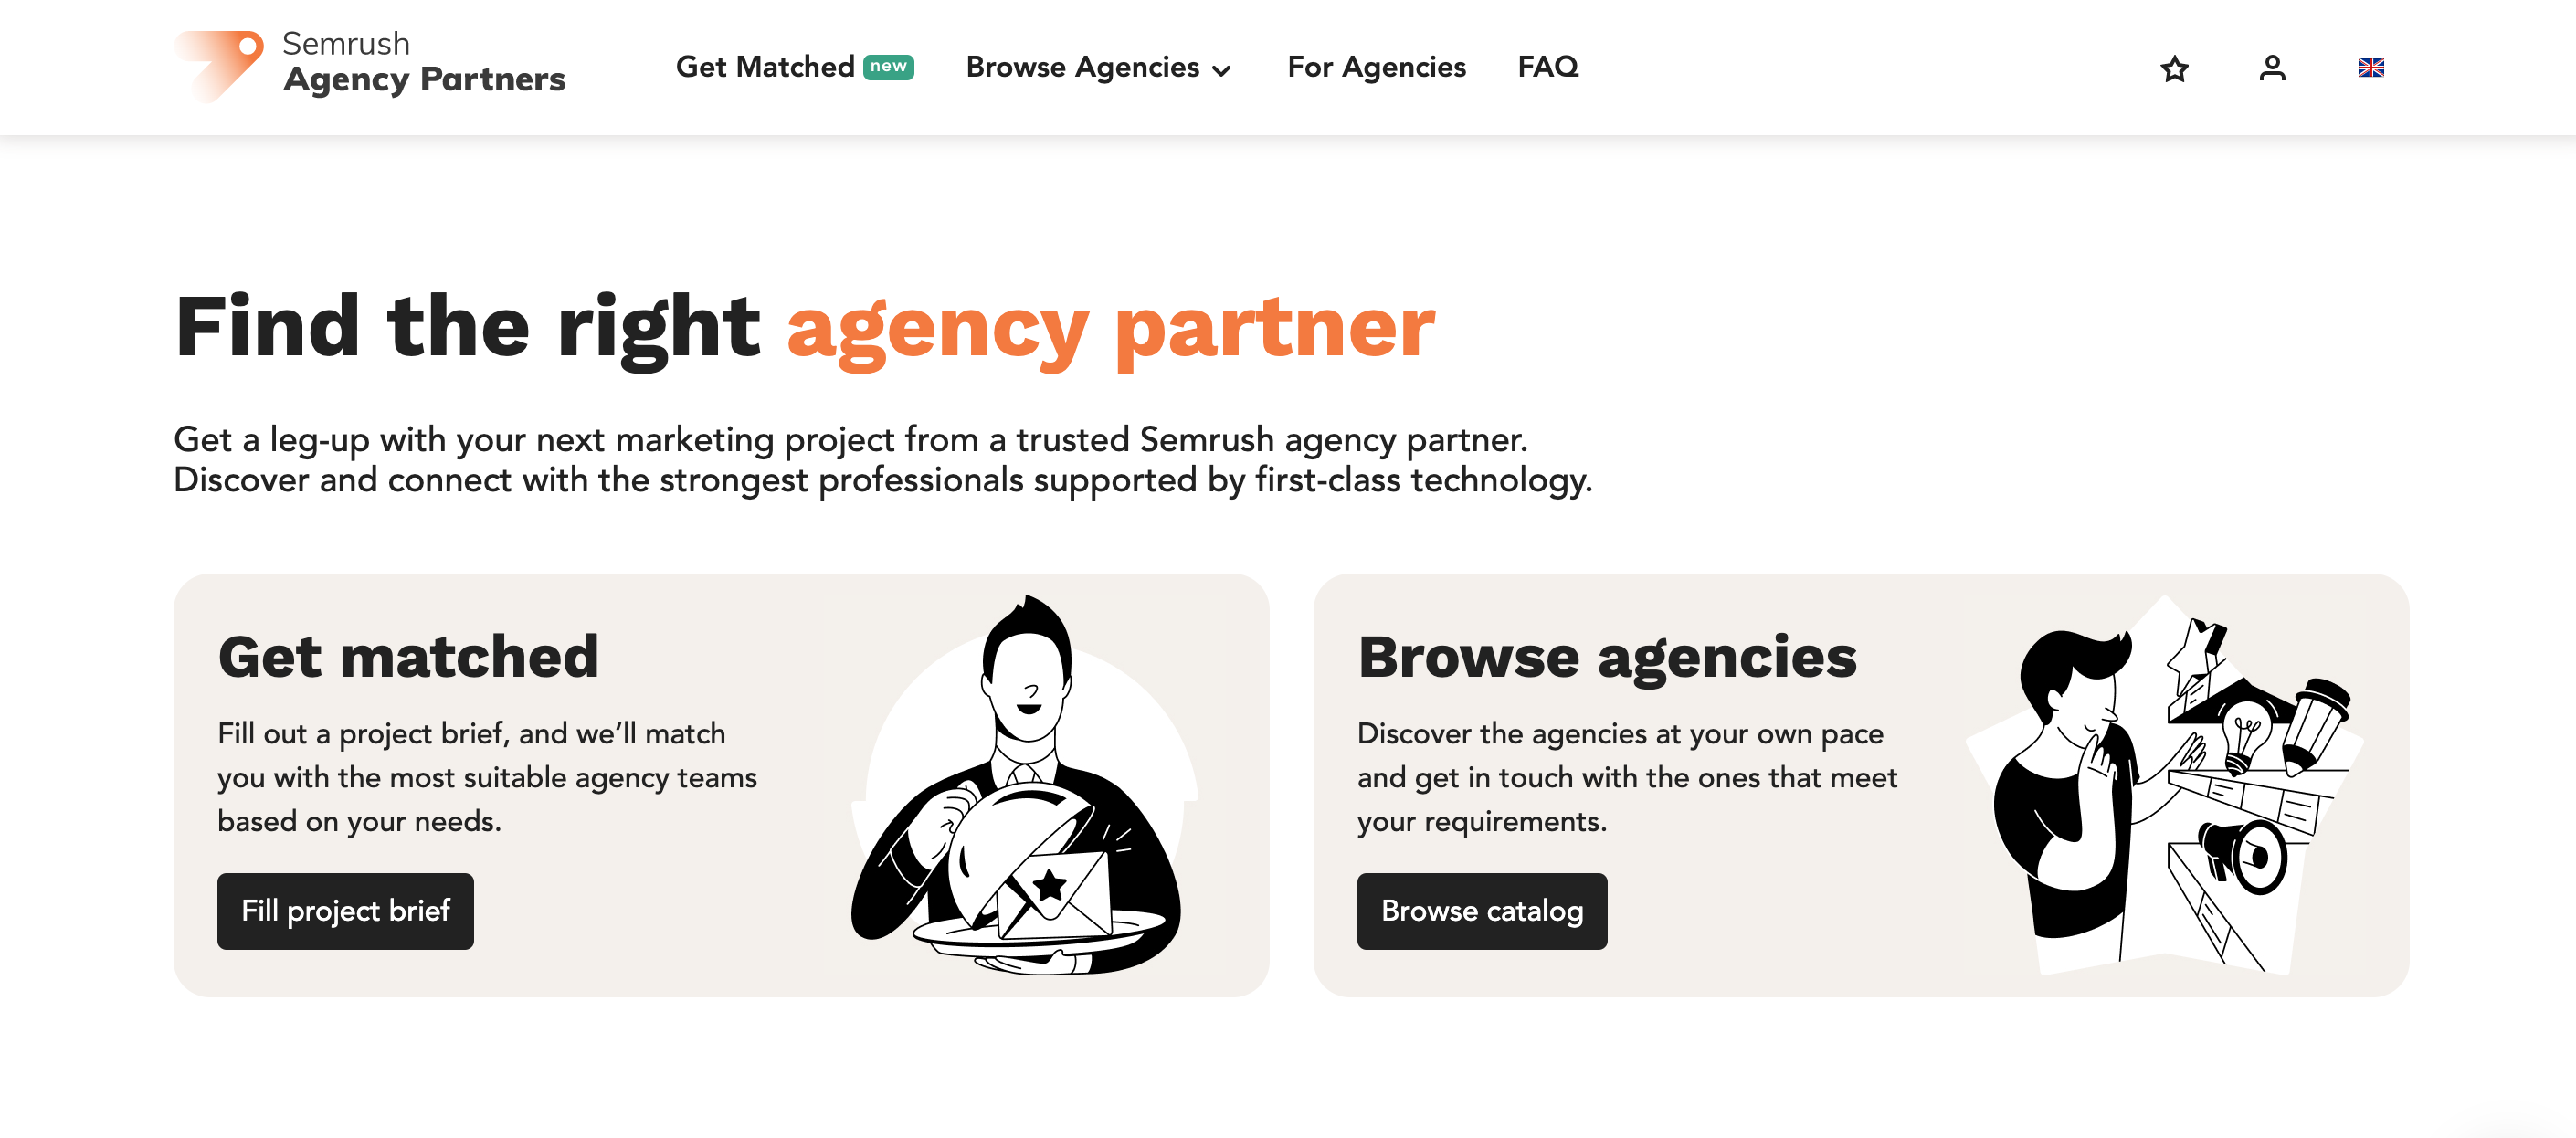 La página de inicio de la plataforma de Agencias Partner muestra botones para rellenar un briefing de proyecto y encontrar agencias o explorar el catálogo. 